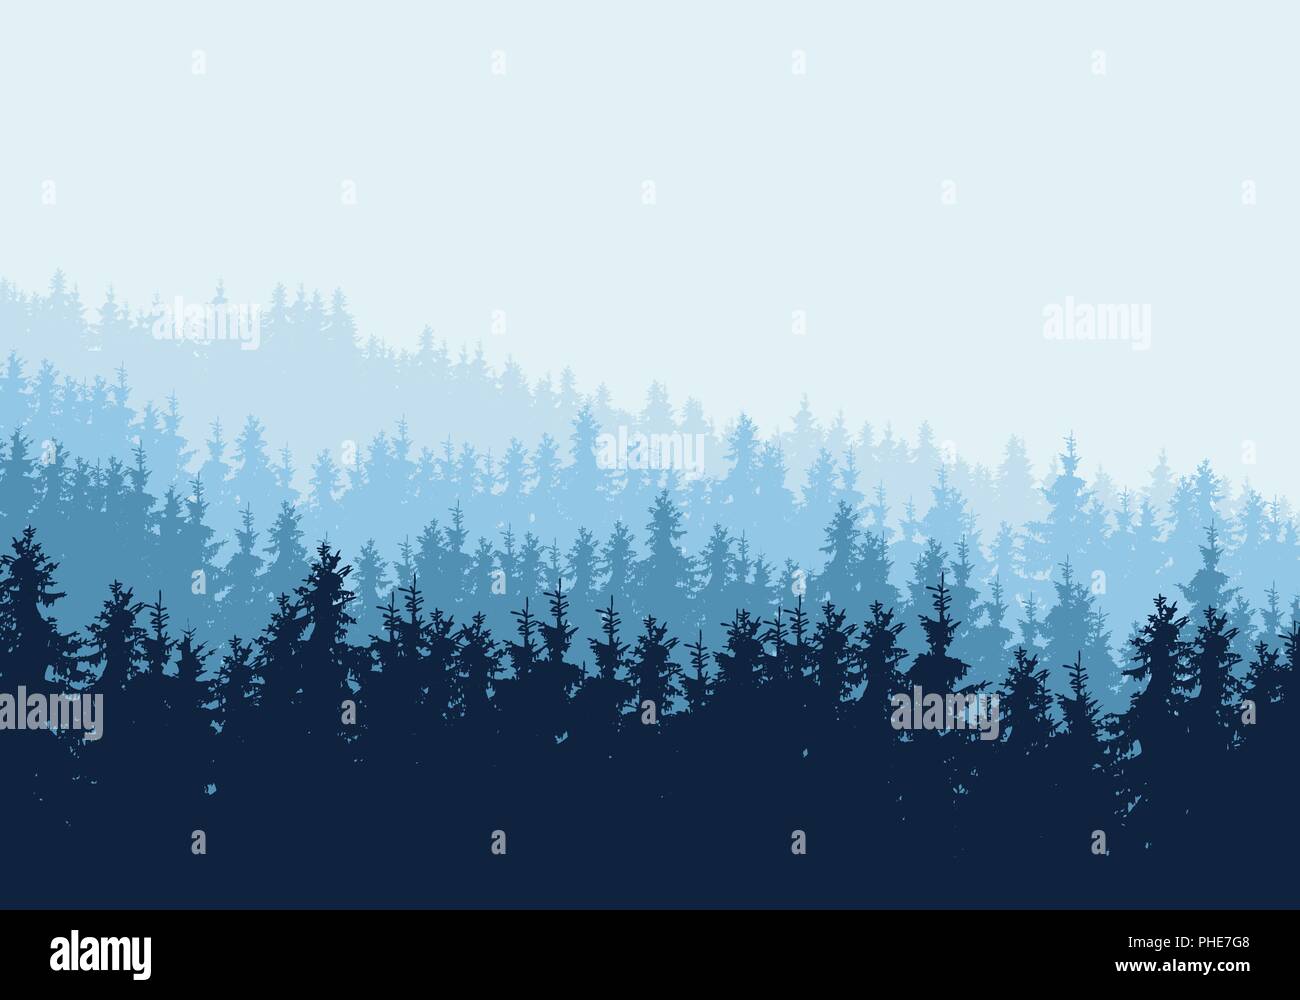 Vektor realistische Abbildung von Nadelwald mit blauen Bäume und Tannen in mehreren Schichten, unter winterlichen Himmel und Nebel. Horizontale mit Platz fo Stock Vektor